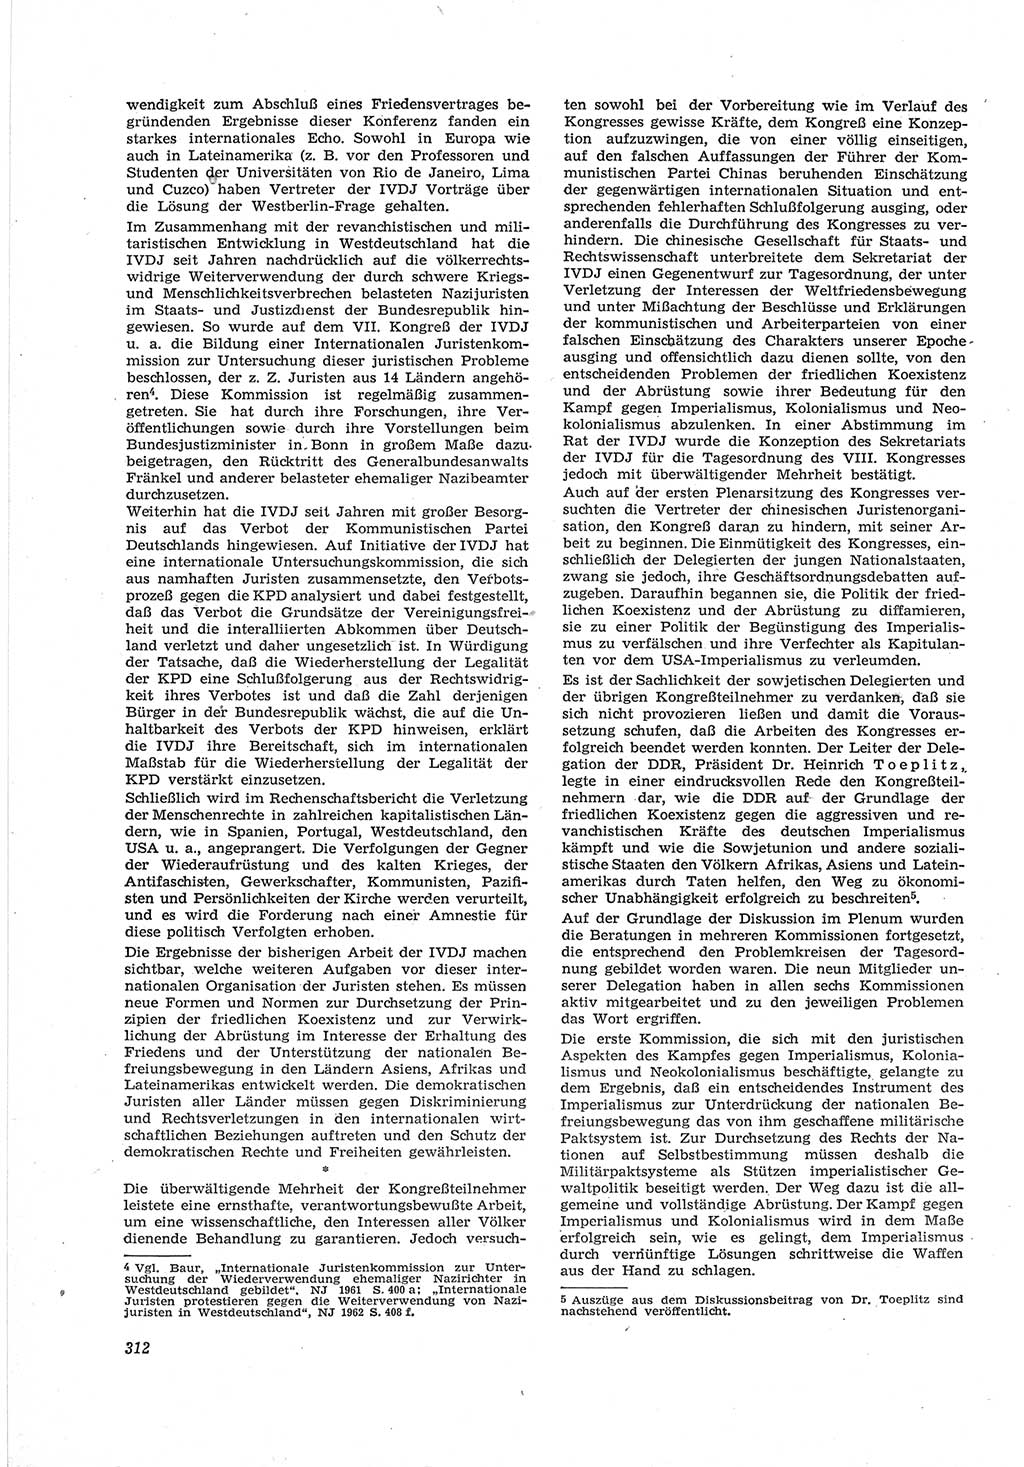 Neue Justiz (NJ), Zeitschrift für Recht und Rechtswissenschaft [Deutsche Demokratische Republik (DDR)], 18. Jahrgang 1964, Seite 312 (NJ DDR 1964, S. 312)